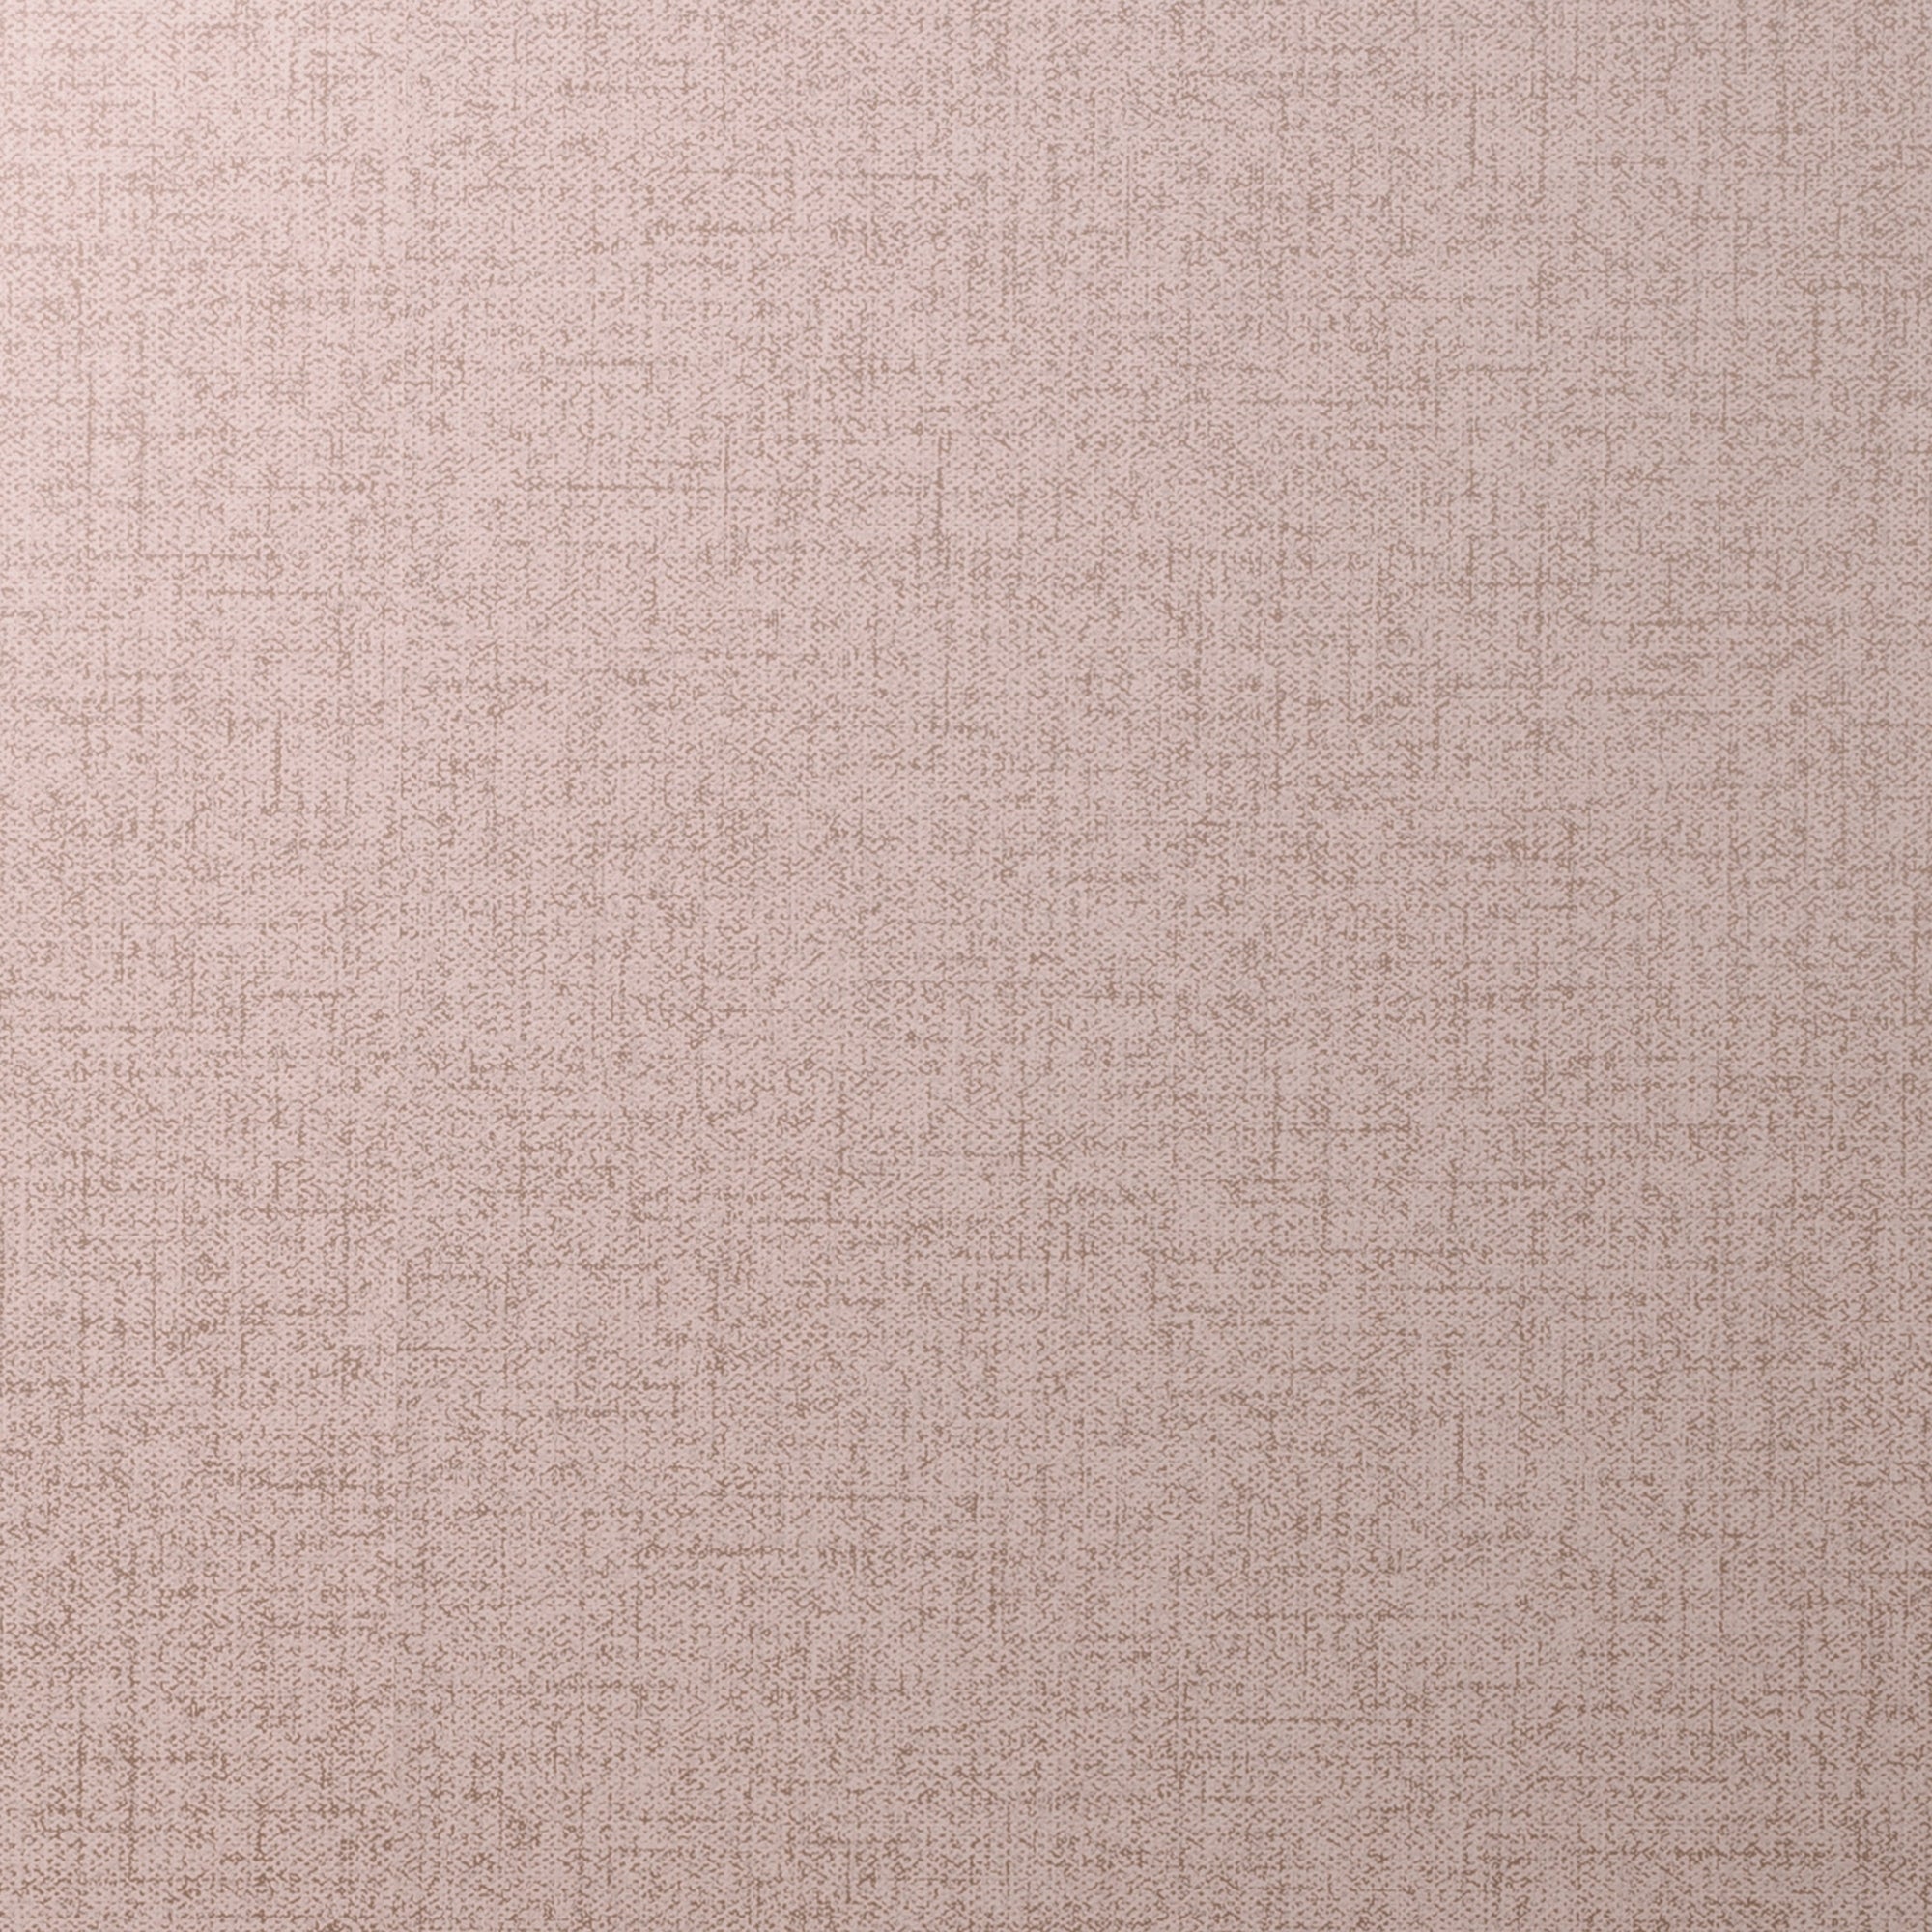 Cara Textured Blush Wallpaper Dunelm